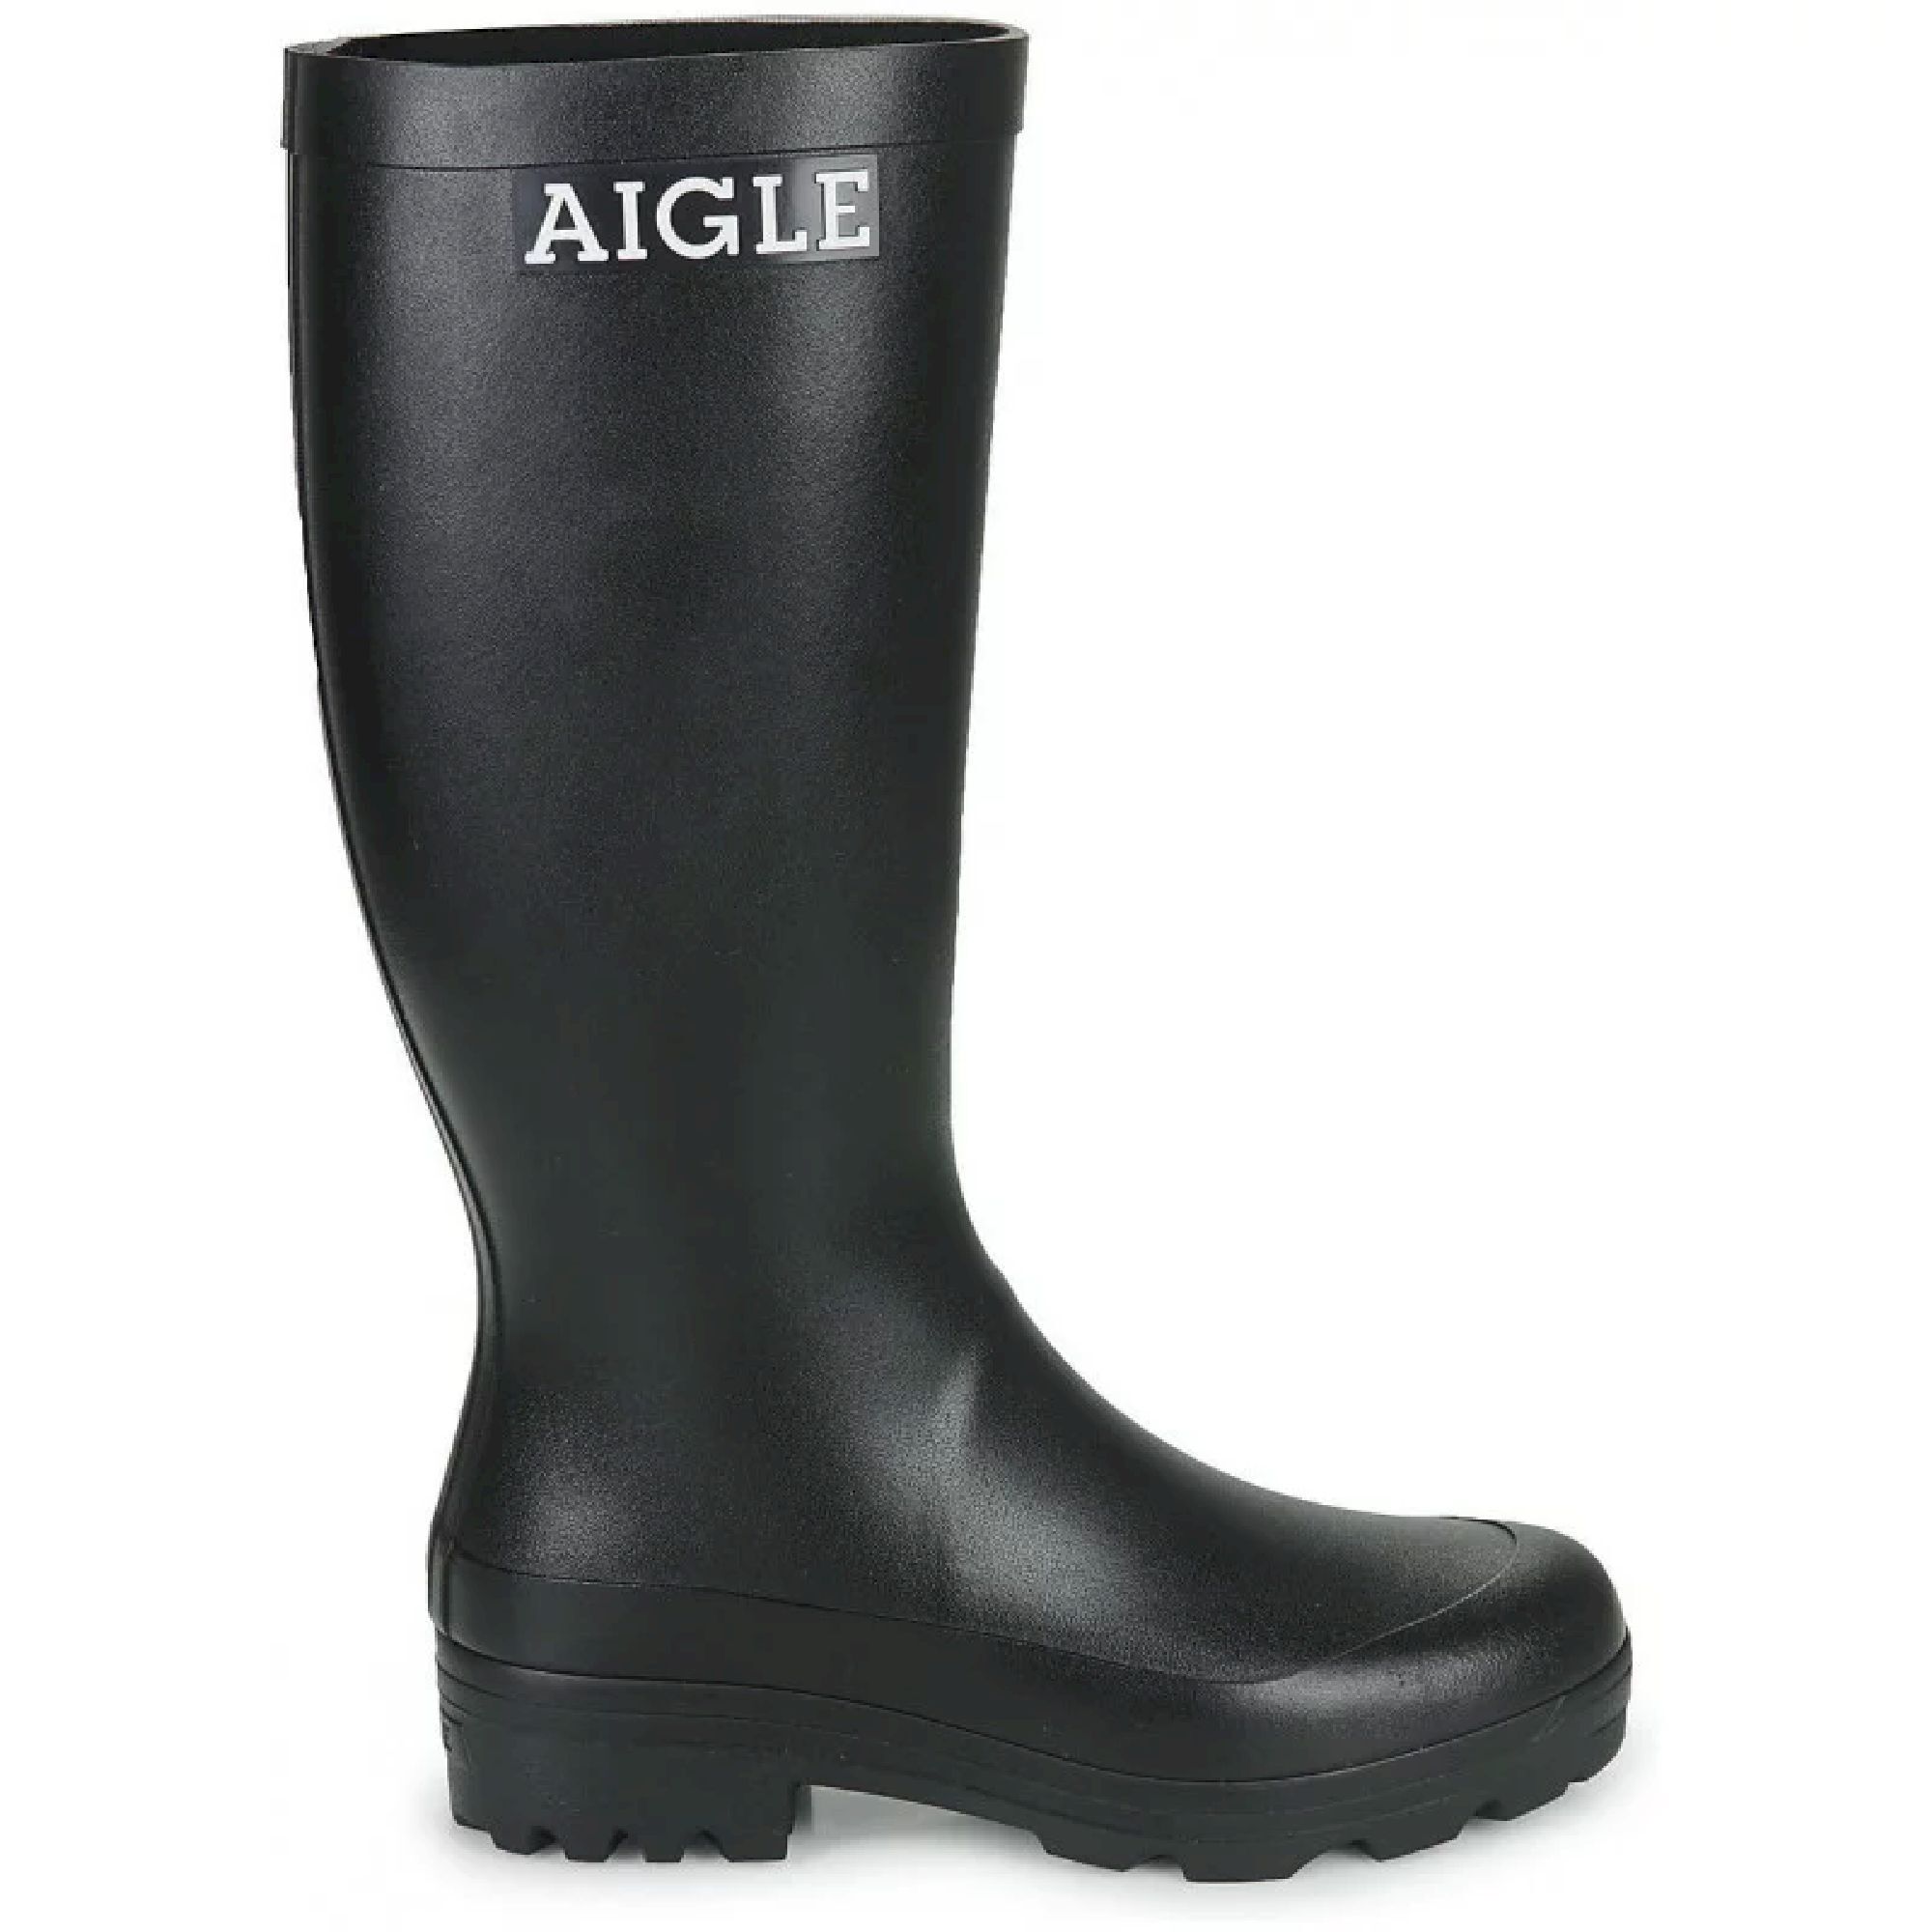 Aigle Atelier Aigle - Wellington boots - Women's